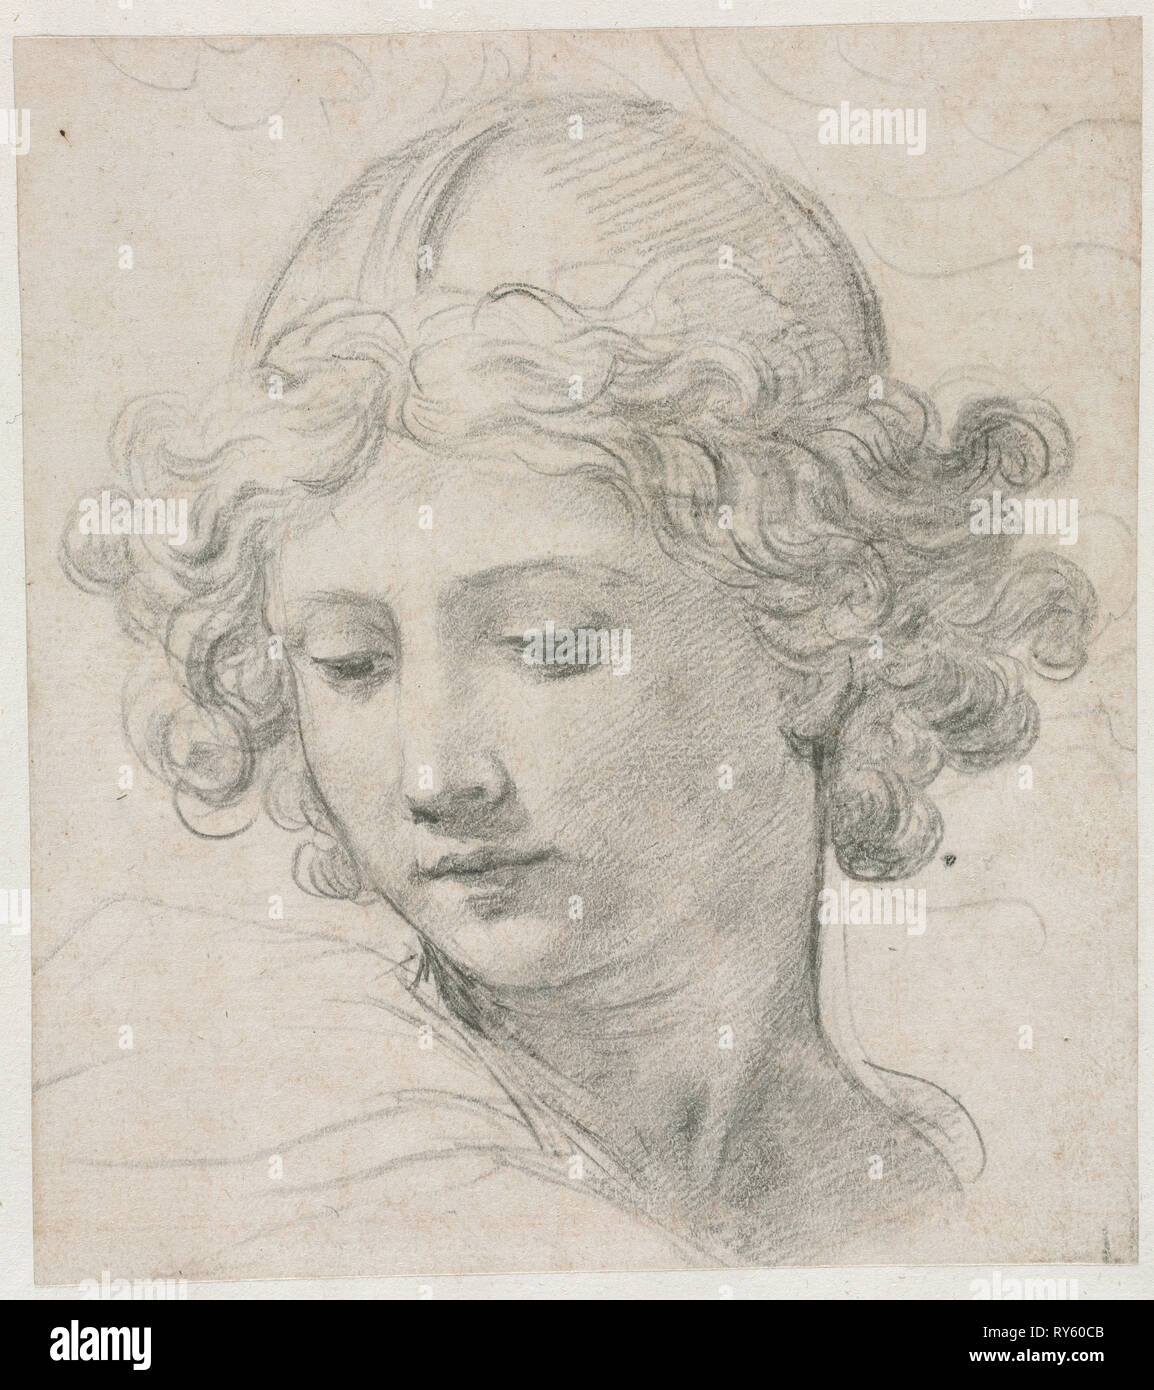 Study for the Head of St. Michael, 1633. Pietro da Cortona (Italian, 1596-1669). Black chalk; sheet: 19 x 16.8 cm (7 1/2 x 6 5/8 in.); secondary support: 31.9 x 27.6 cm (12 9/16 x 10 7/8 in Stock Photo